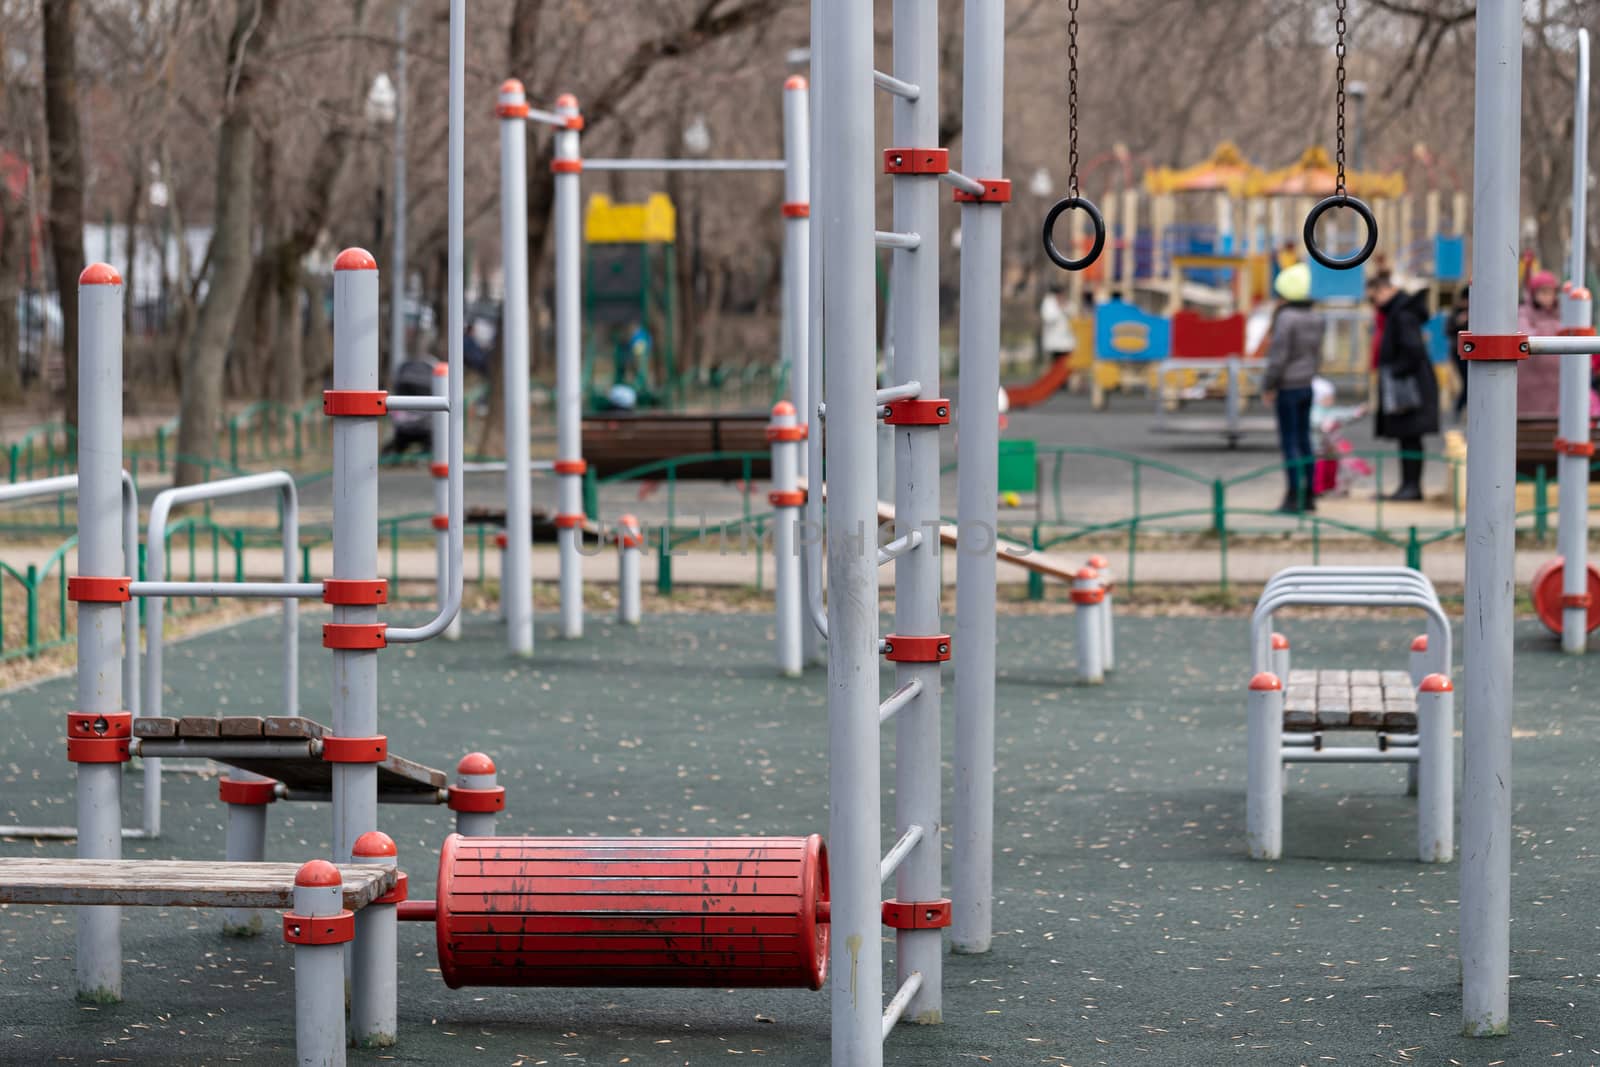 Empty children's playground with no children by bonilook